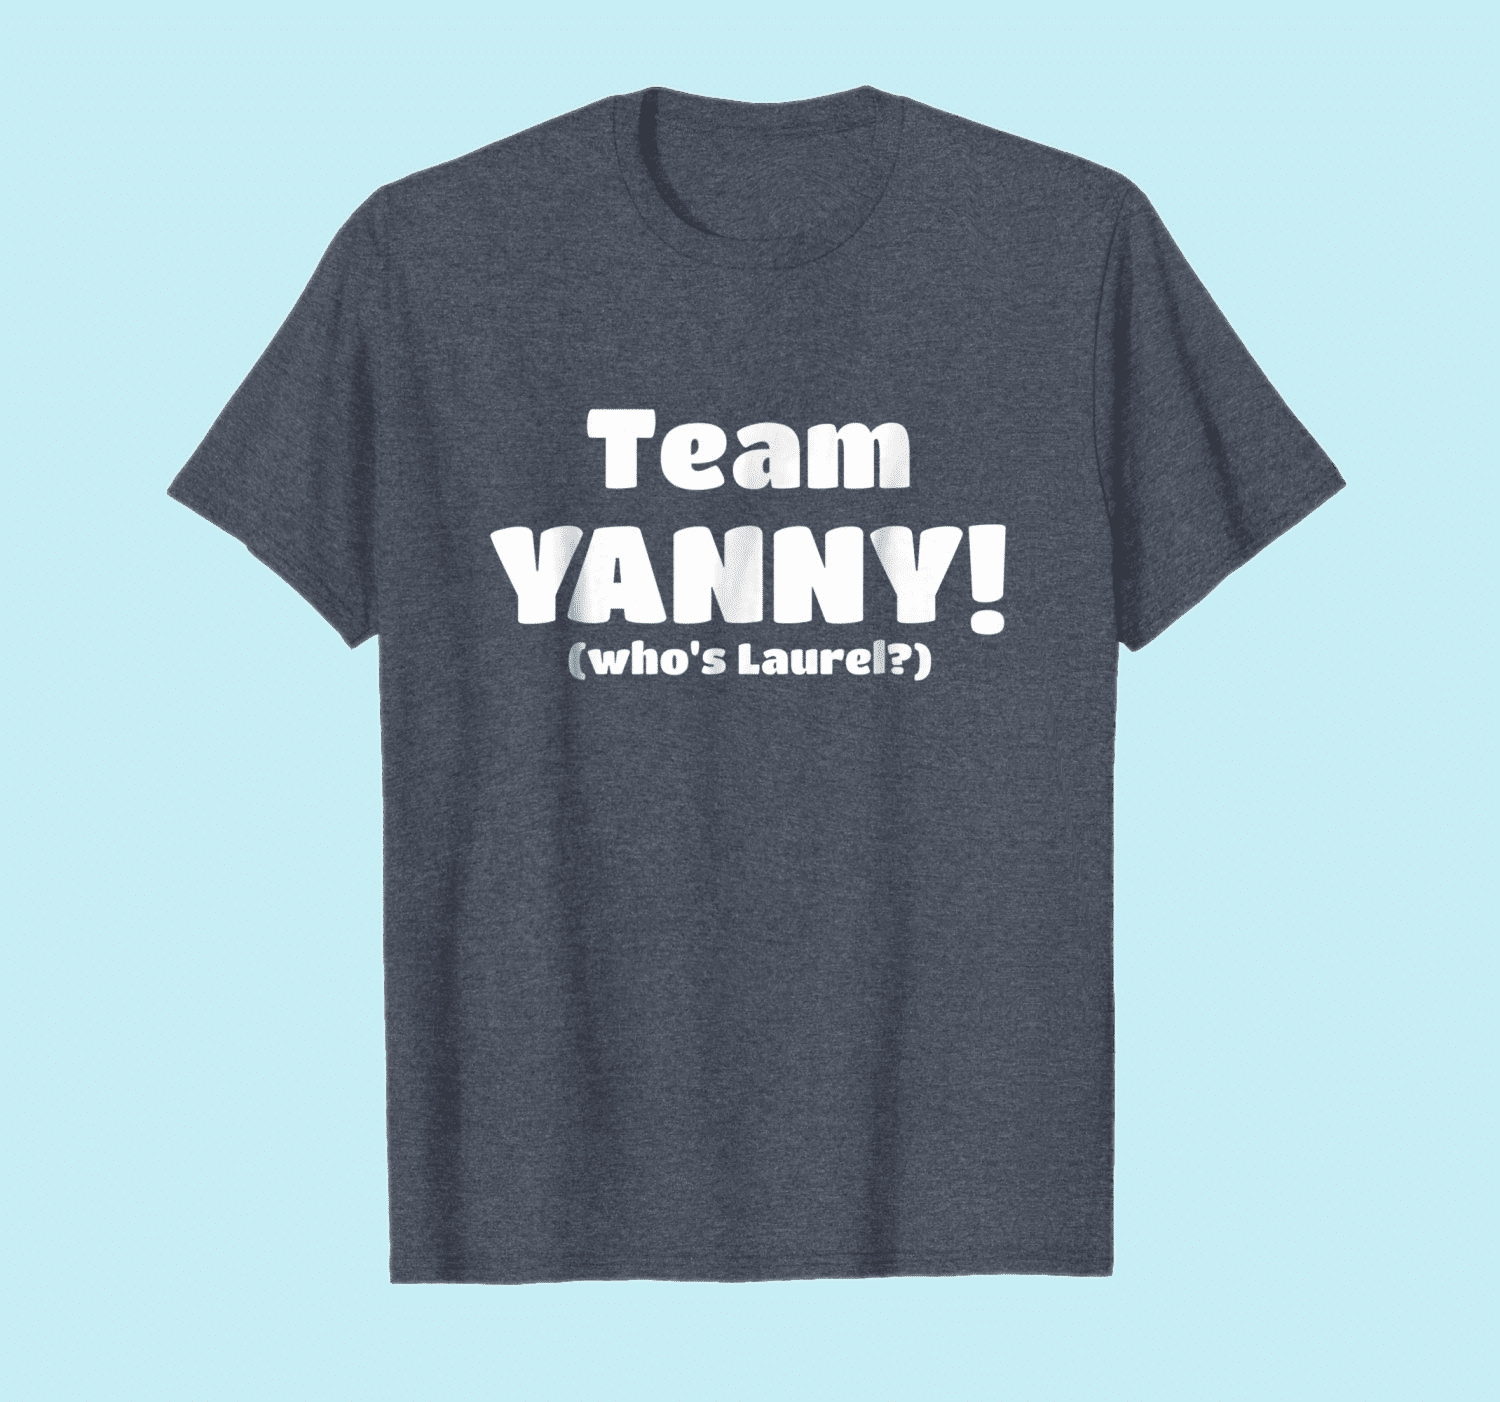 Team Yanny T Shirt 2018